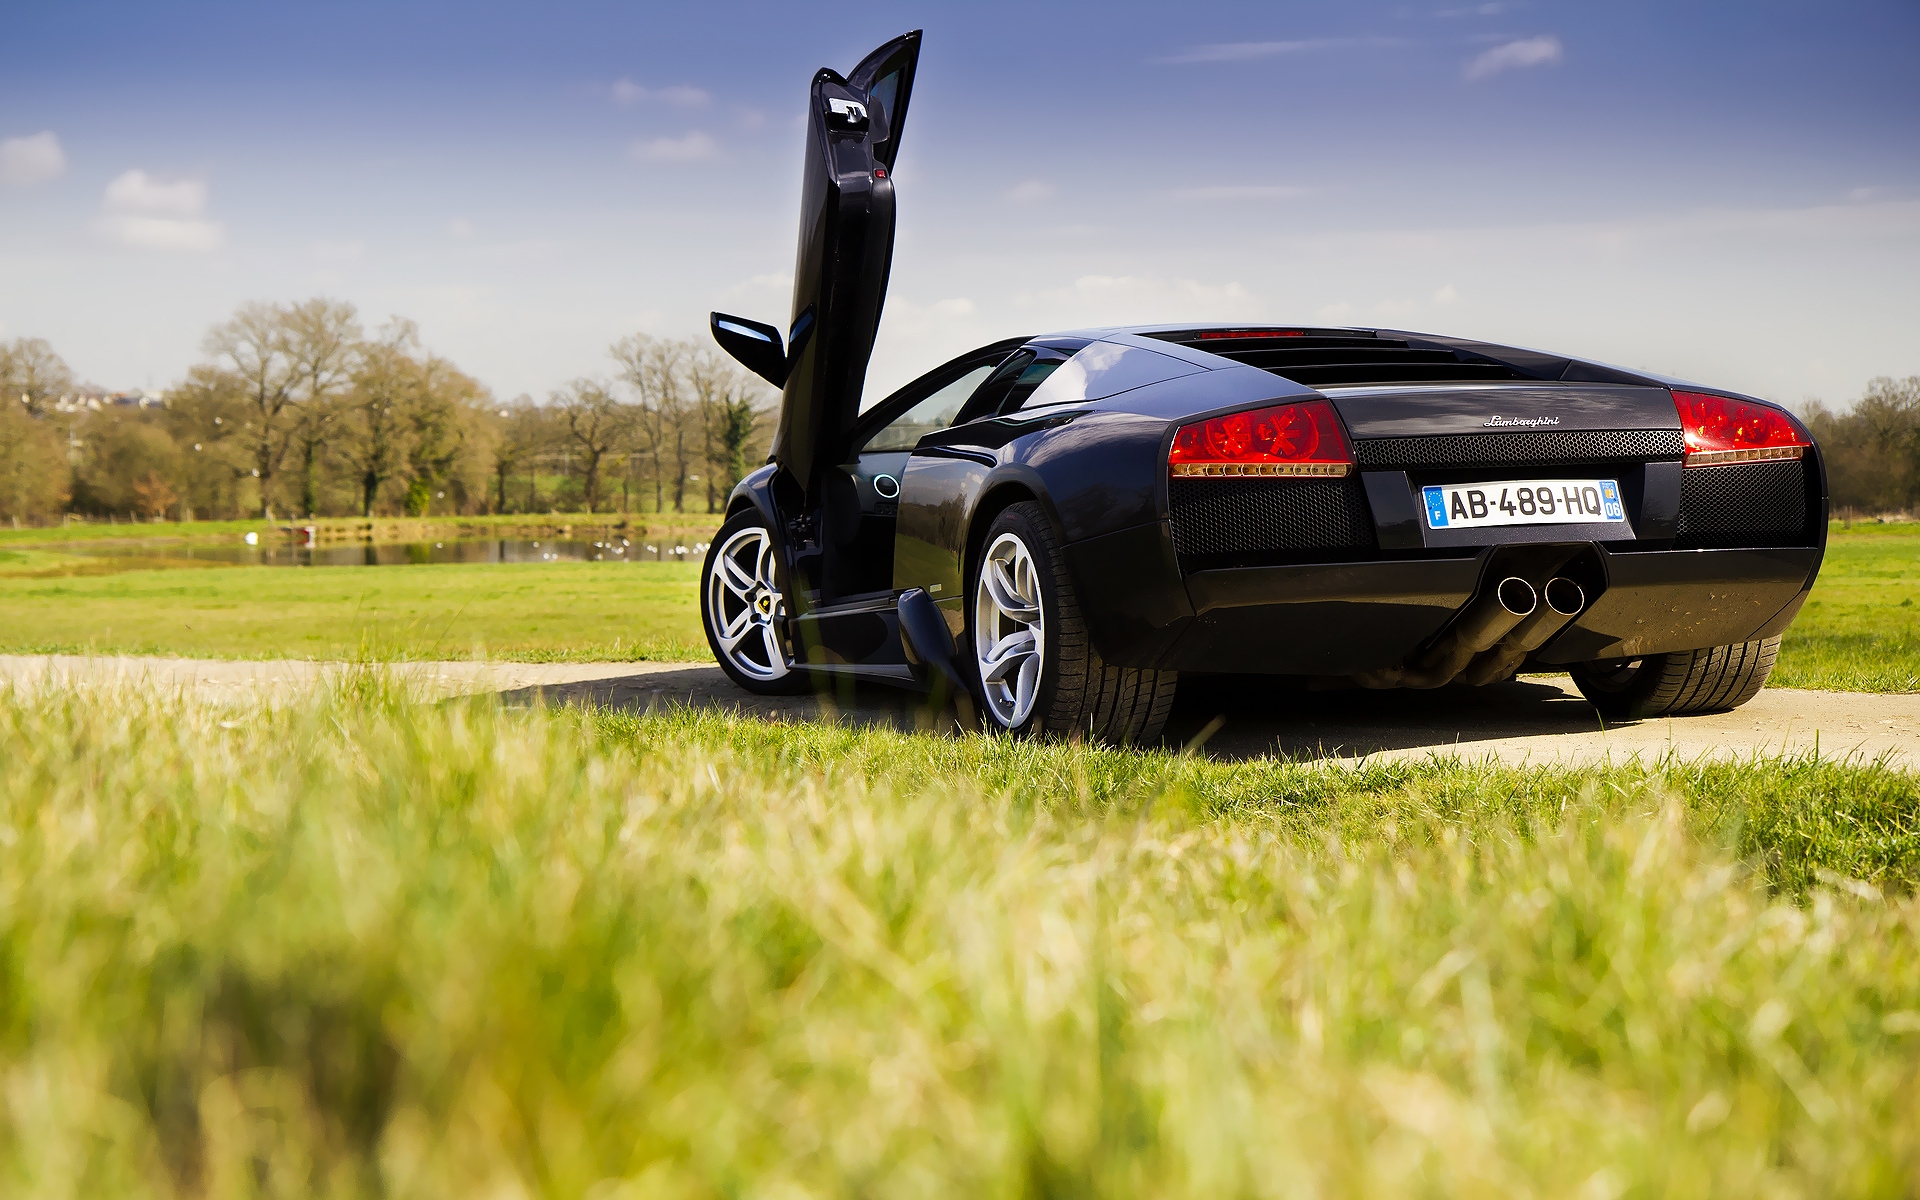 Charming Black Lamborghini Car - Full Hd Lock Screen Wallpaper Windows 8 - HD Wallpaper 